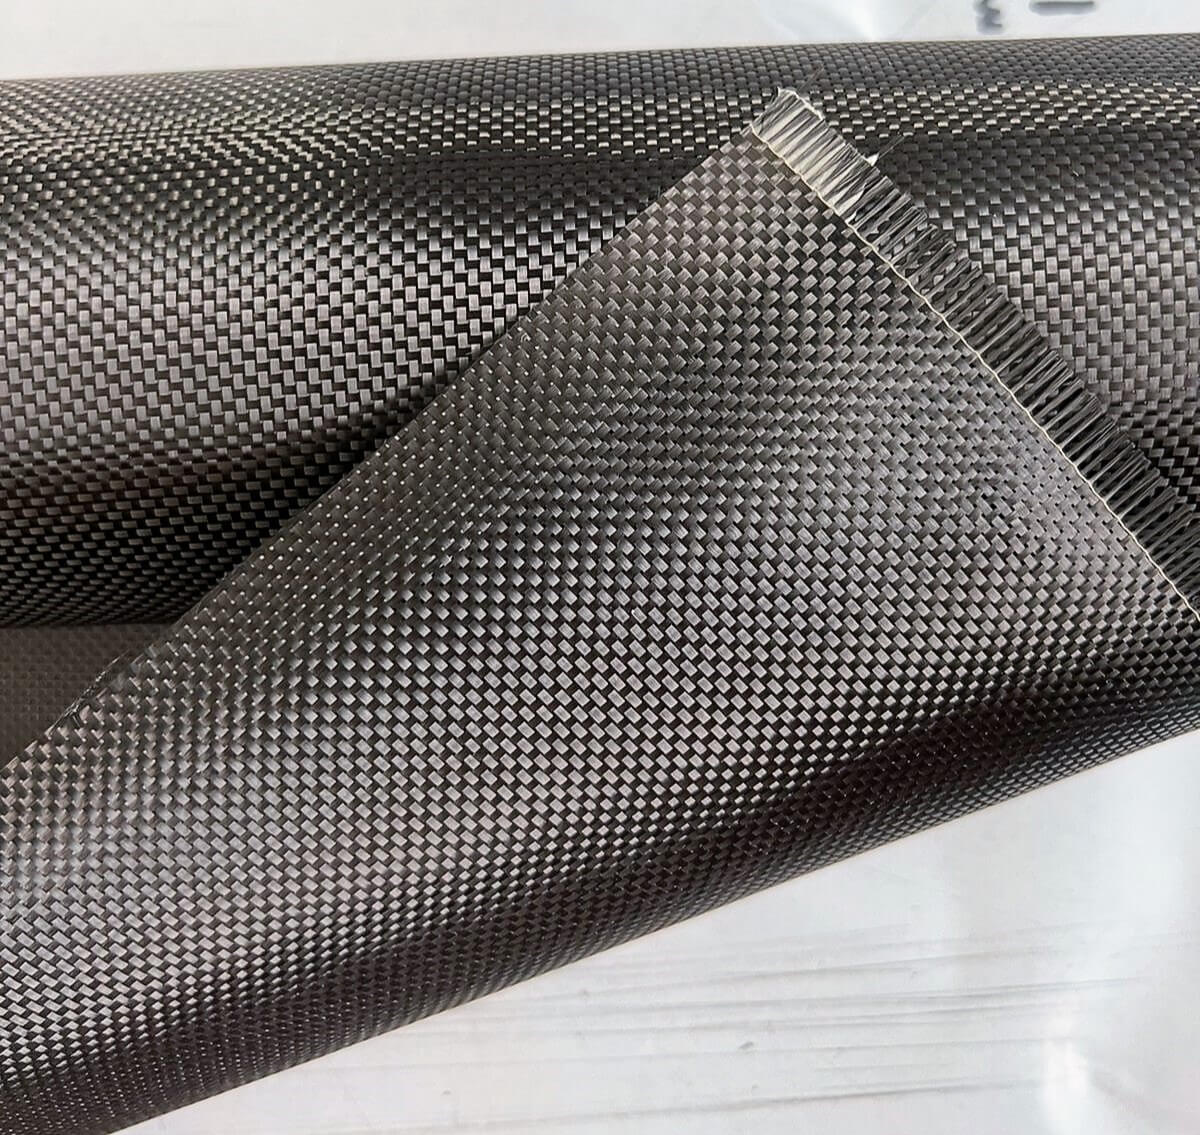 Plain Weave Carbon - Aerontec